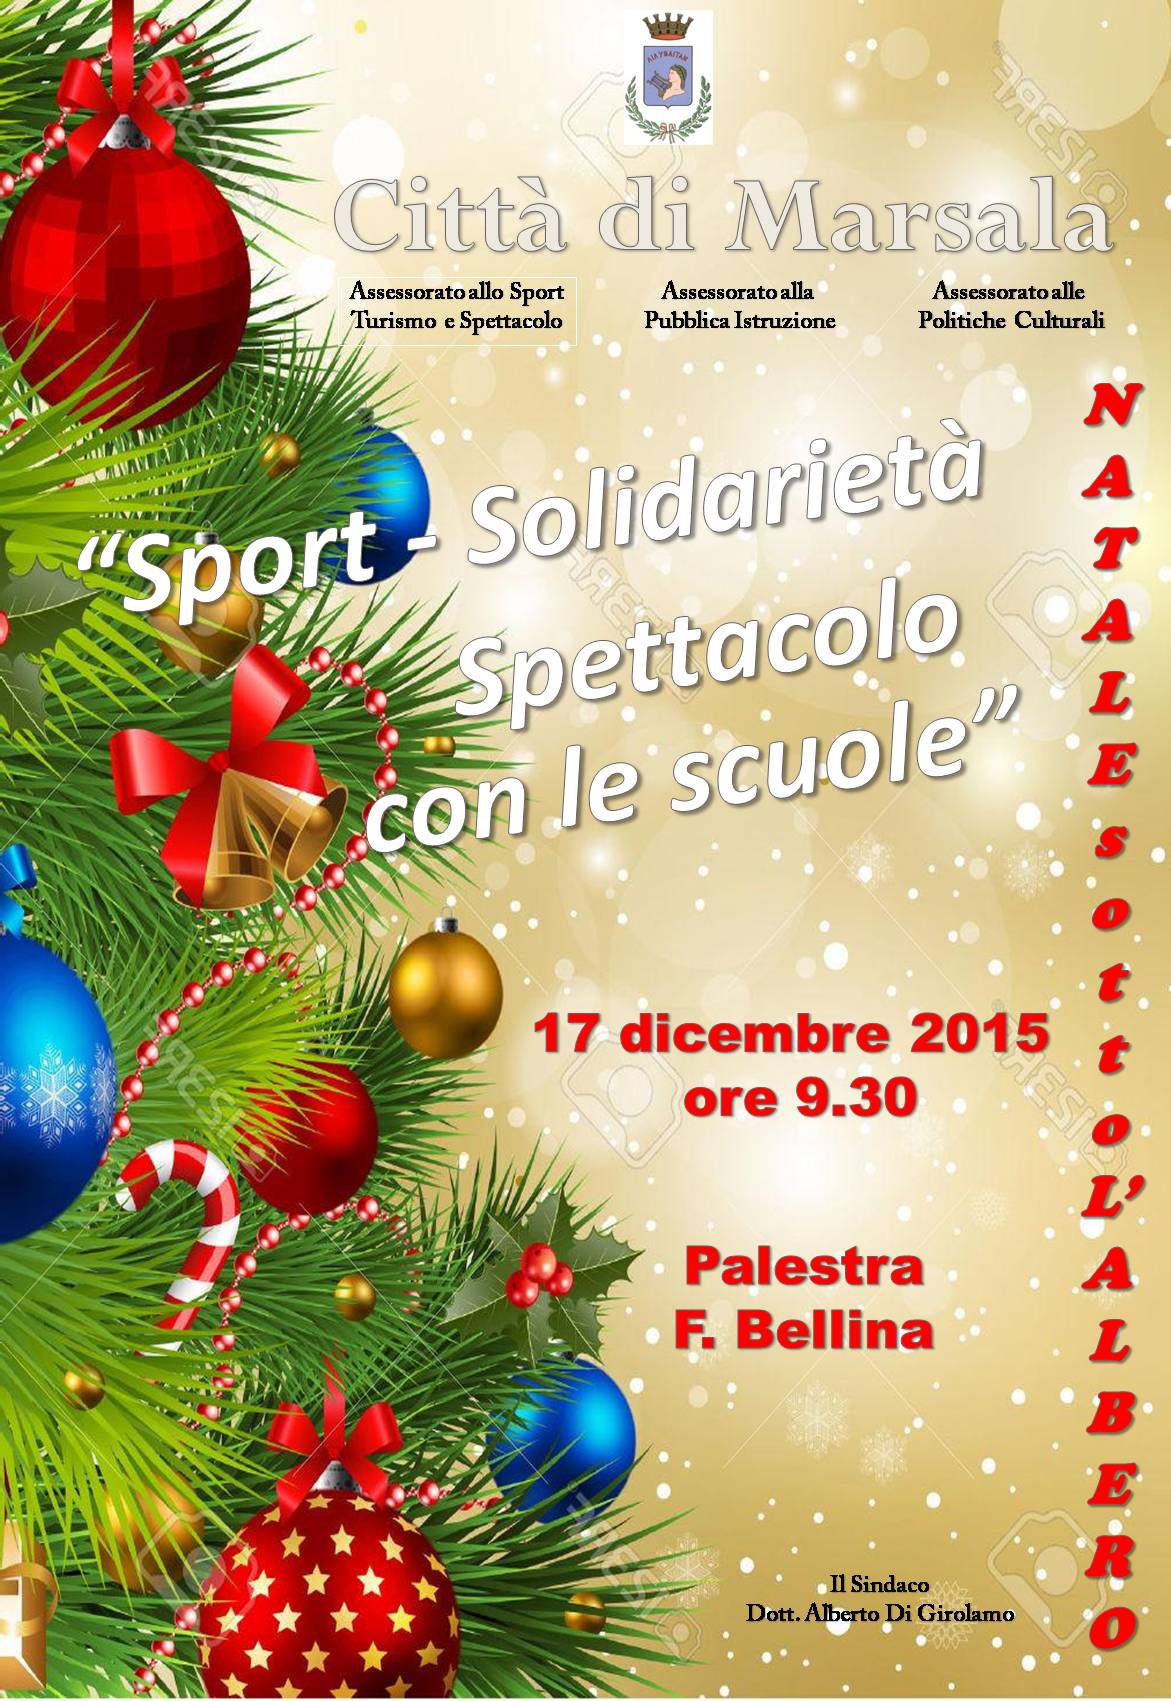 Natale Sotto L Albero.Natale Sotto L Albero Numerosi Studenti Per L Evento Organizzato Alla Palestra Bellina Itaca Notizie